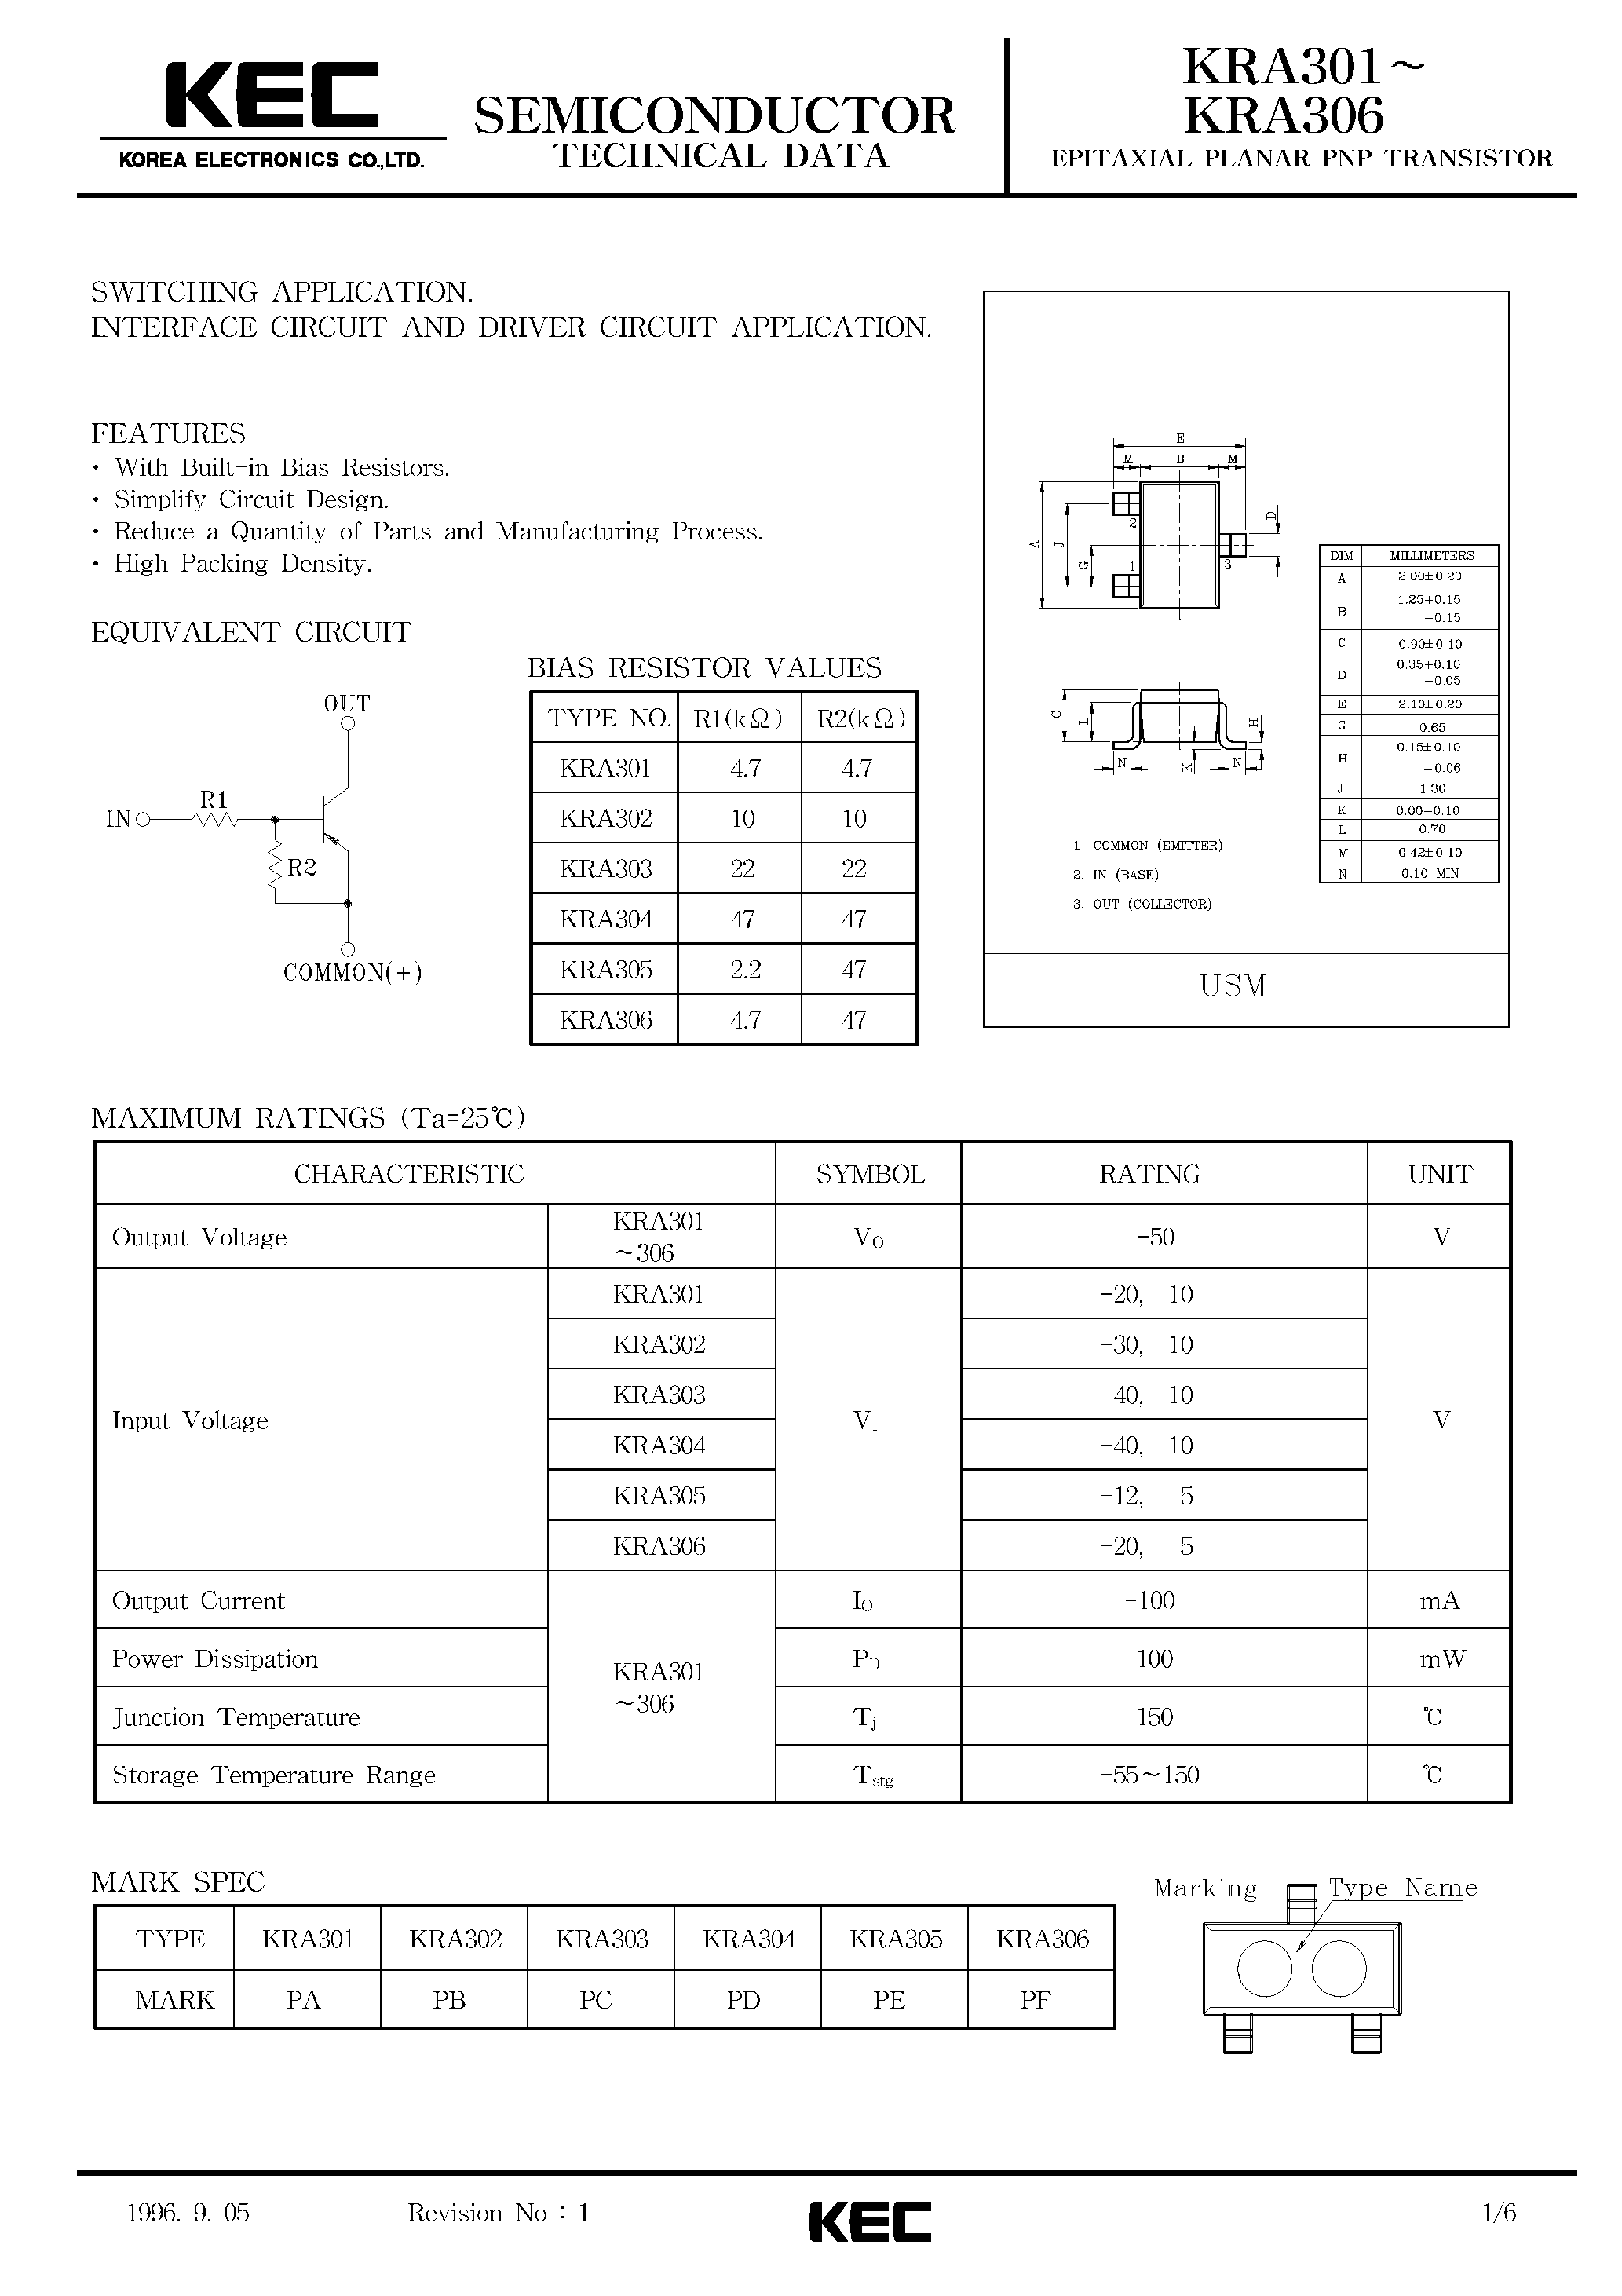 Datasheet KRA301 - (KRA301 - KRA306) EPITAXIAL PLANAR PNP TRANSISTOR page 1